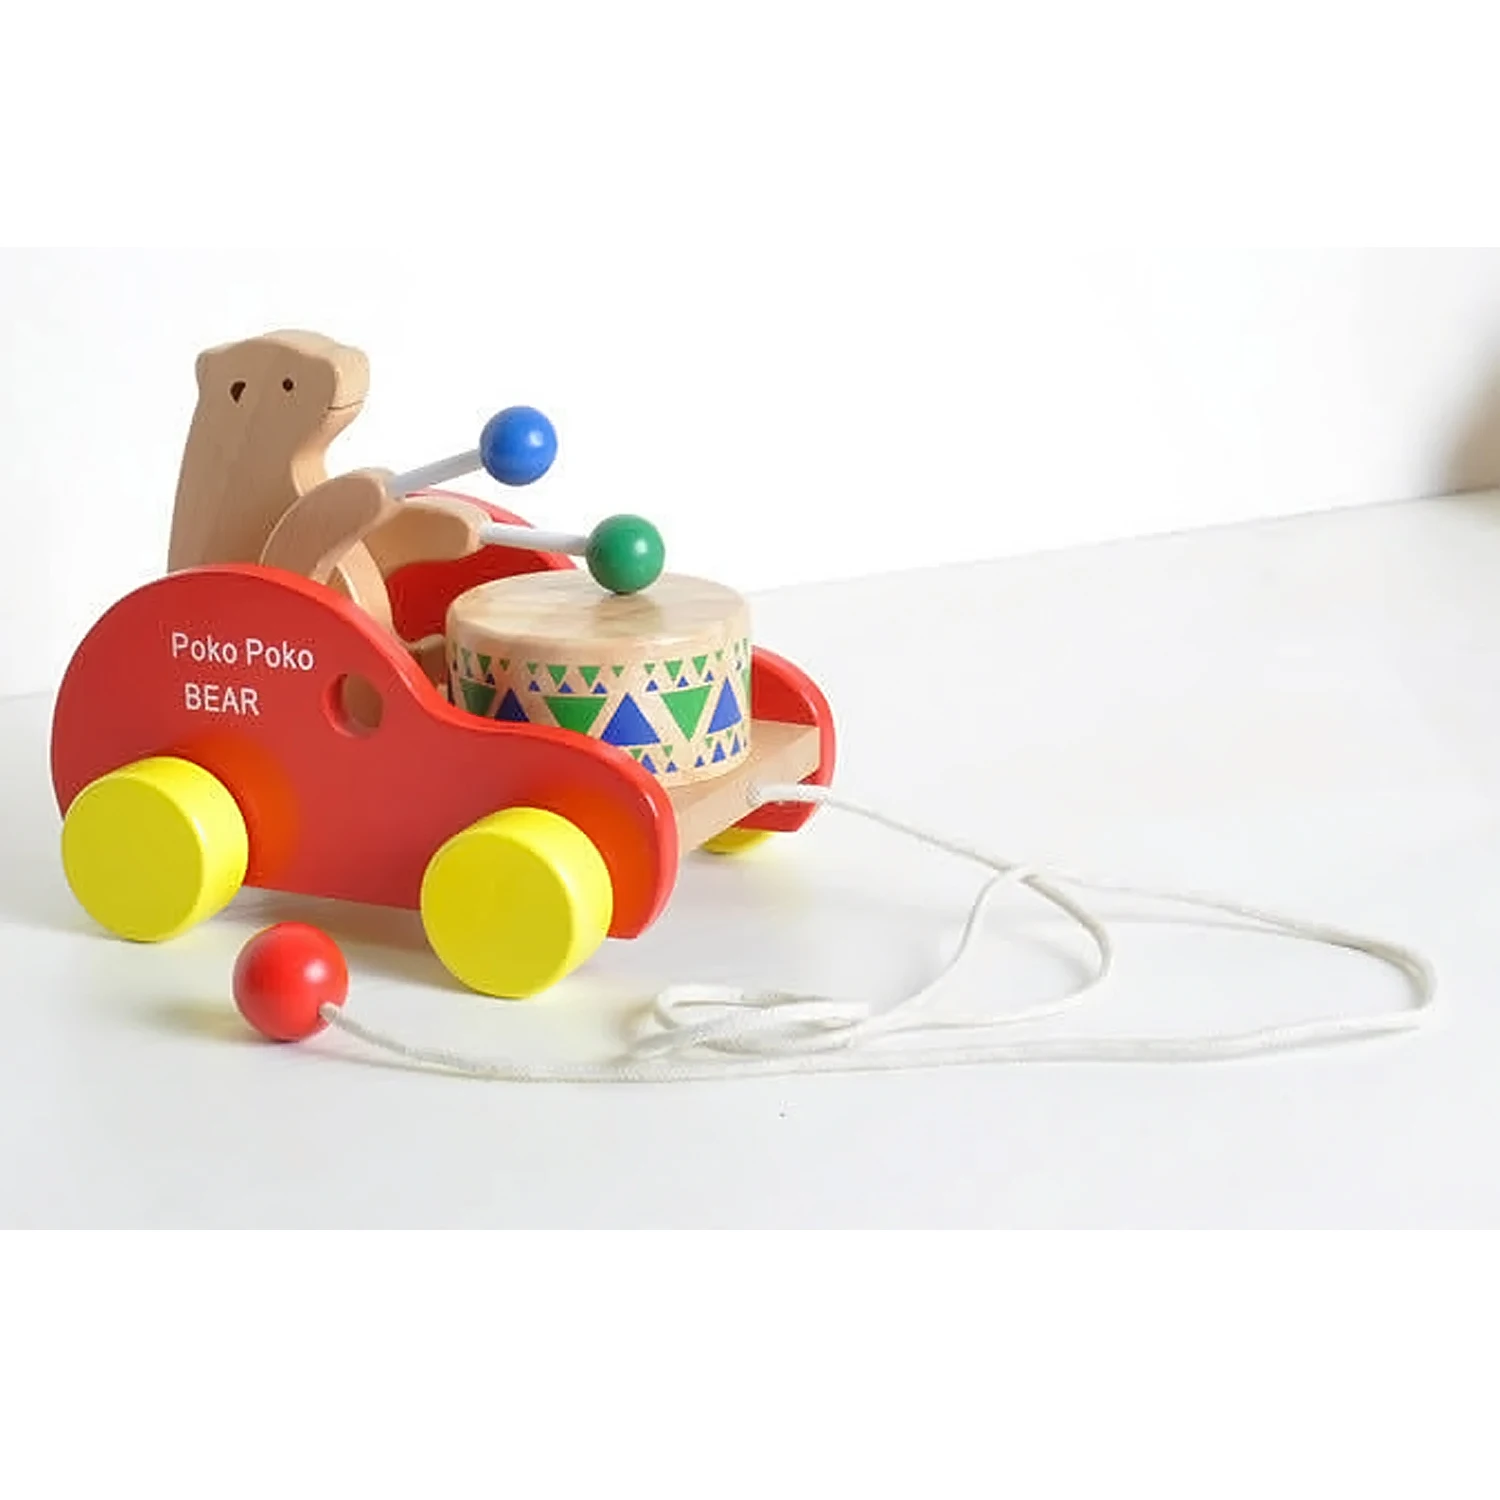 Для ребенка Симпатичные Мультяшные животные каваи деревянные игрушки тянуть автомобиль грузовик Cub медведь Beats Drum Музыкальные Развивающие игрушки подарки колышки игры